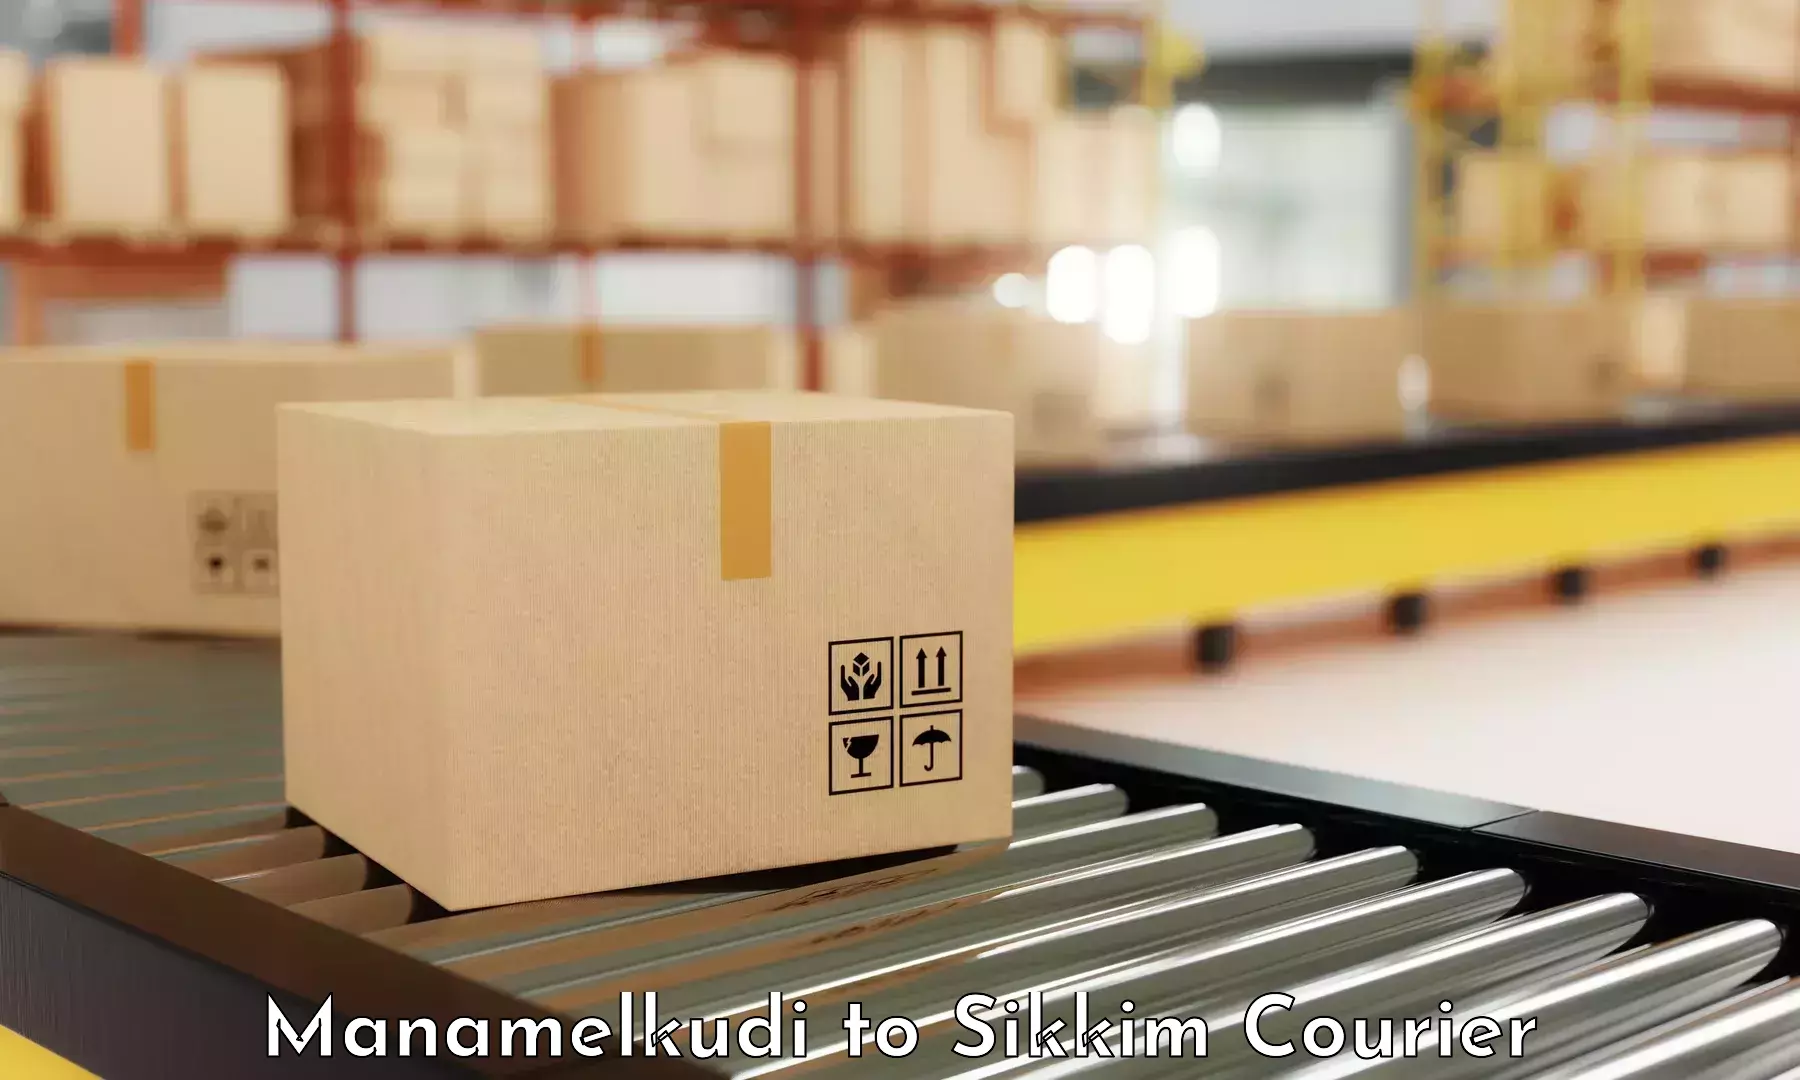 Specialized shipment handling Manamelkudi to Namchi